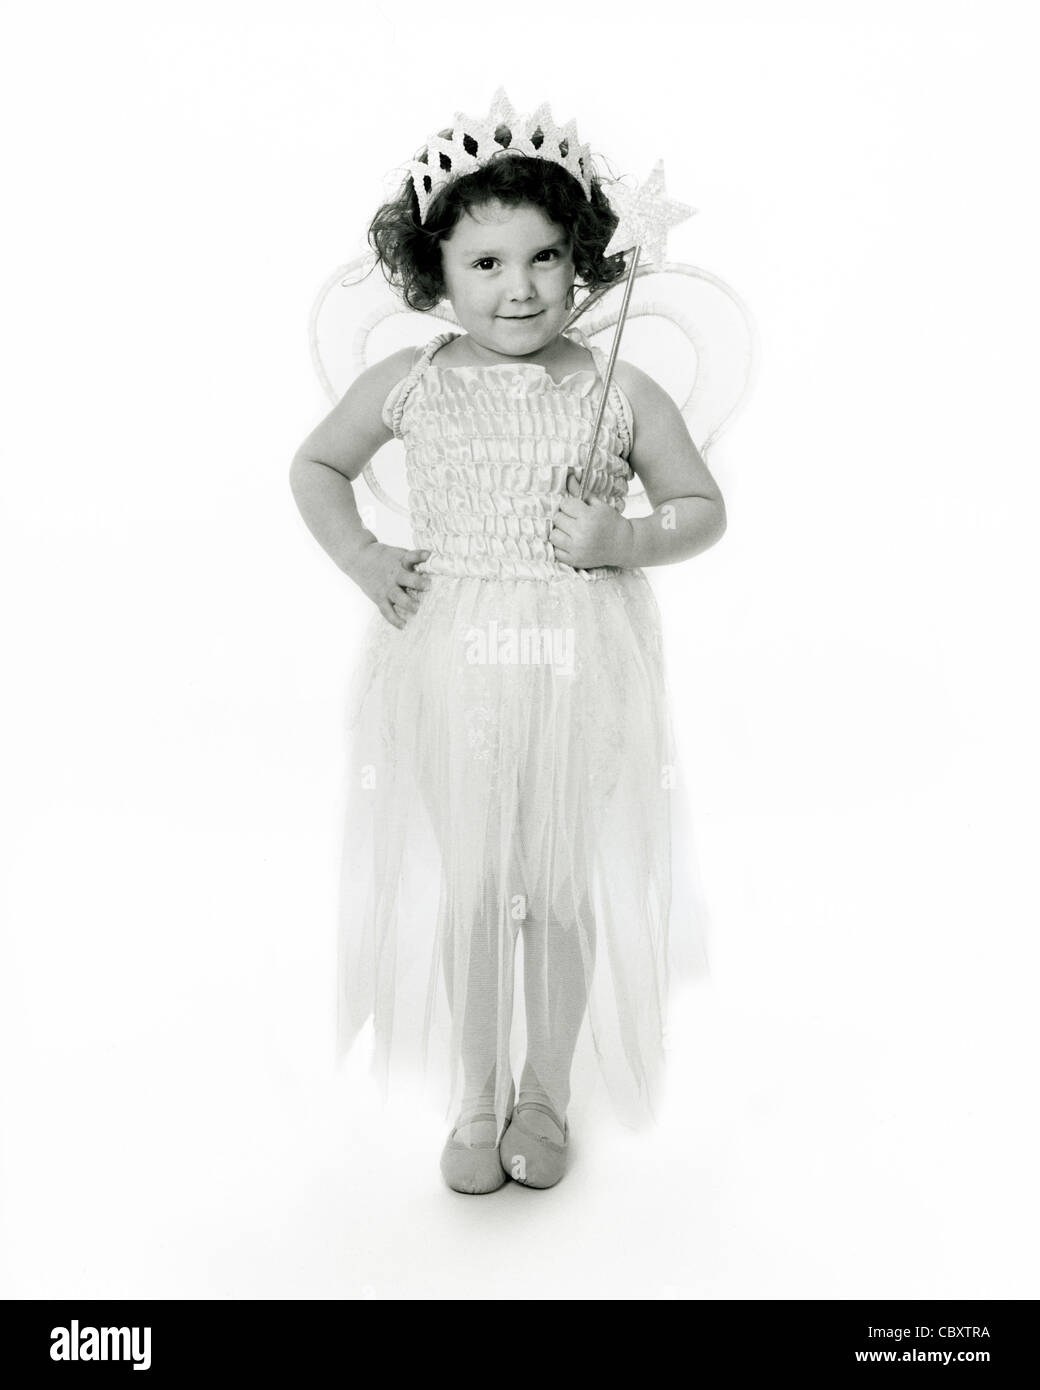 Monochrome, hochtakte Studioaufnahme eines jungen kaukasischen Kindes, das in einem Feenkostüm mit Flügeln und einem Zauberstab gekleidet ist. Stockfoto